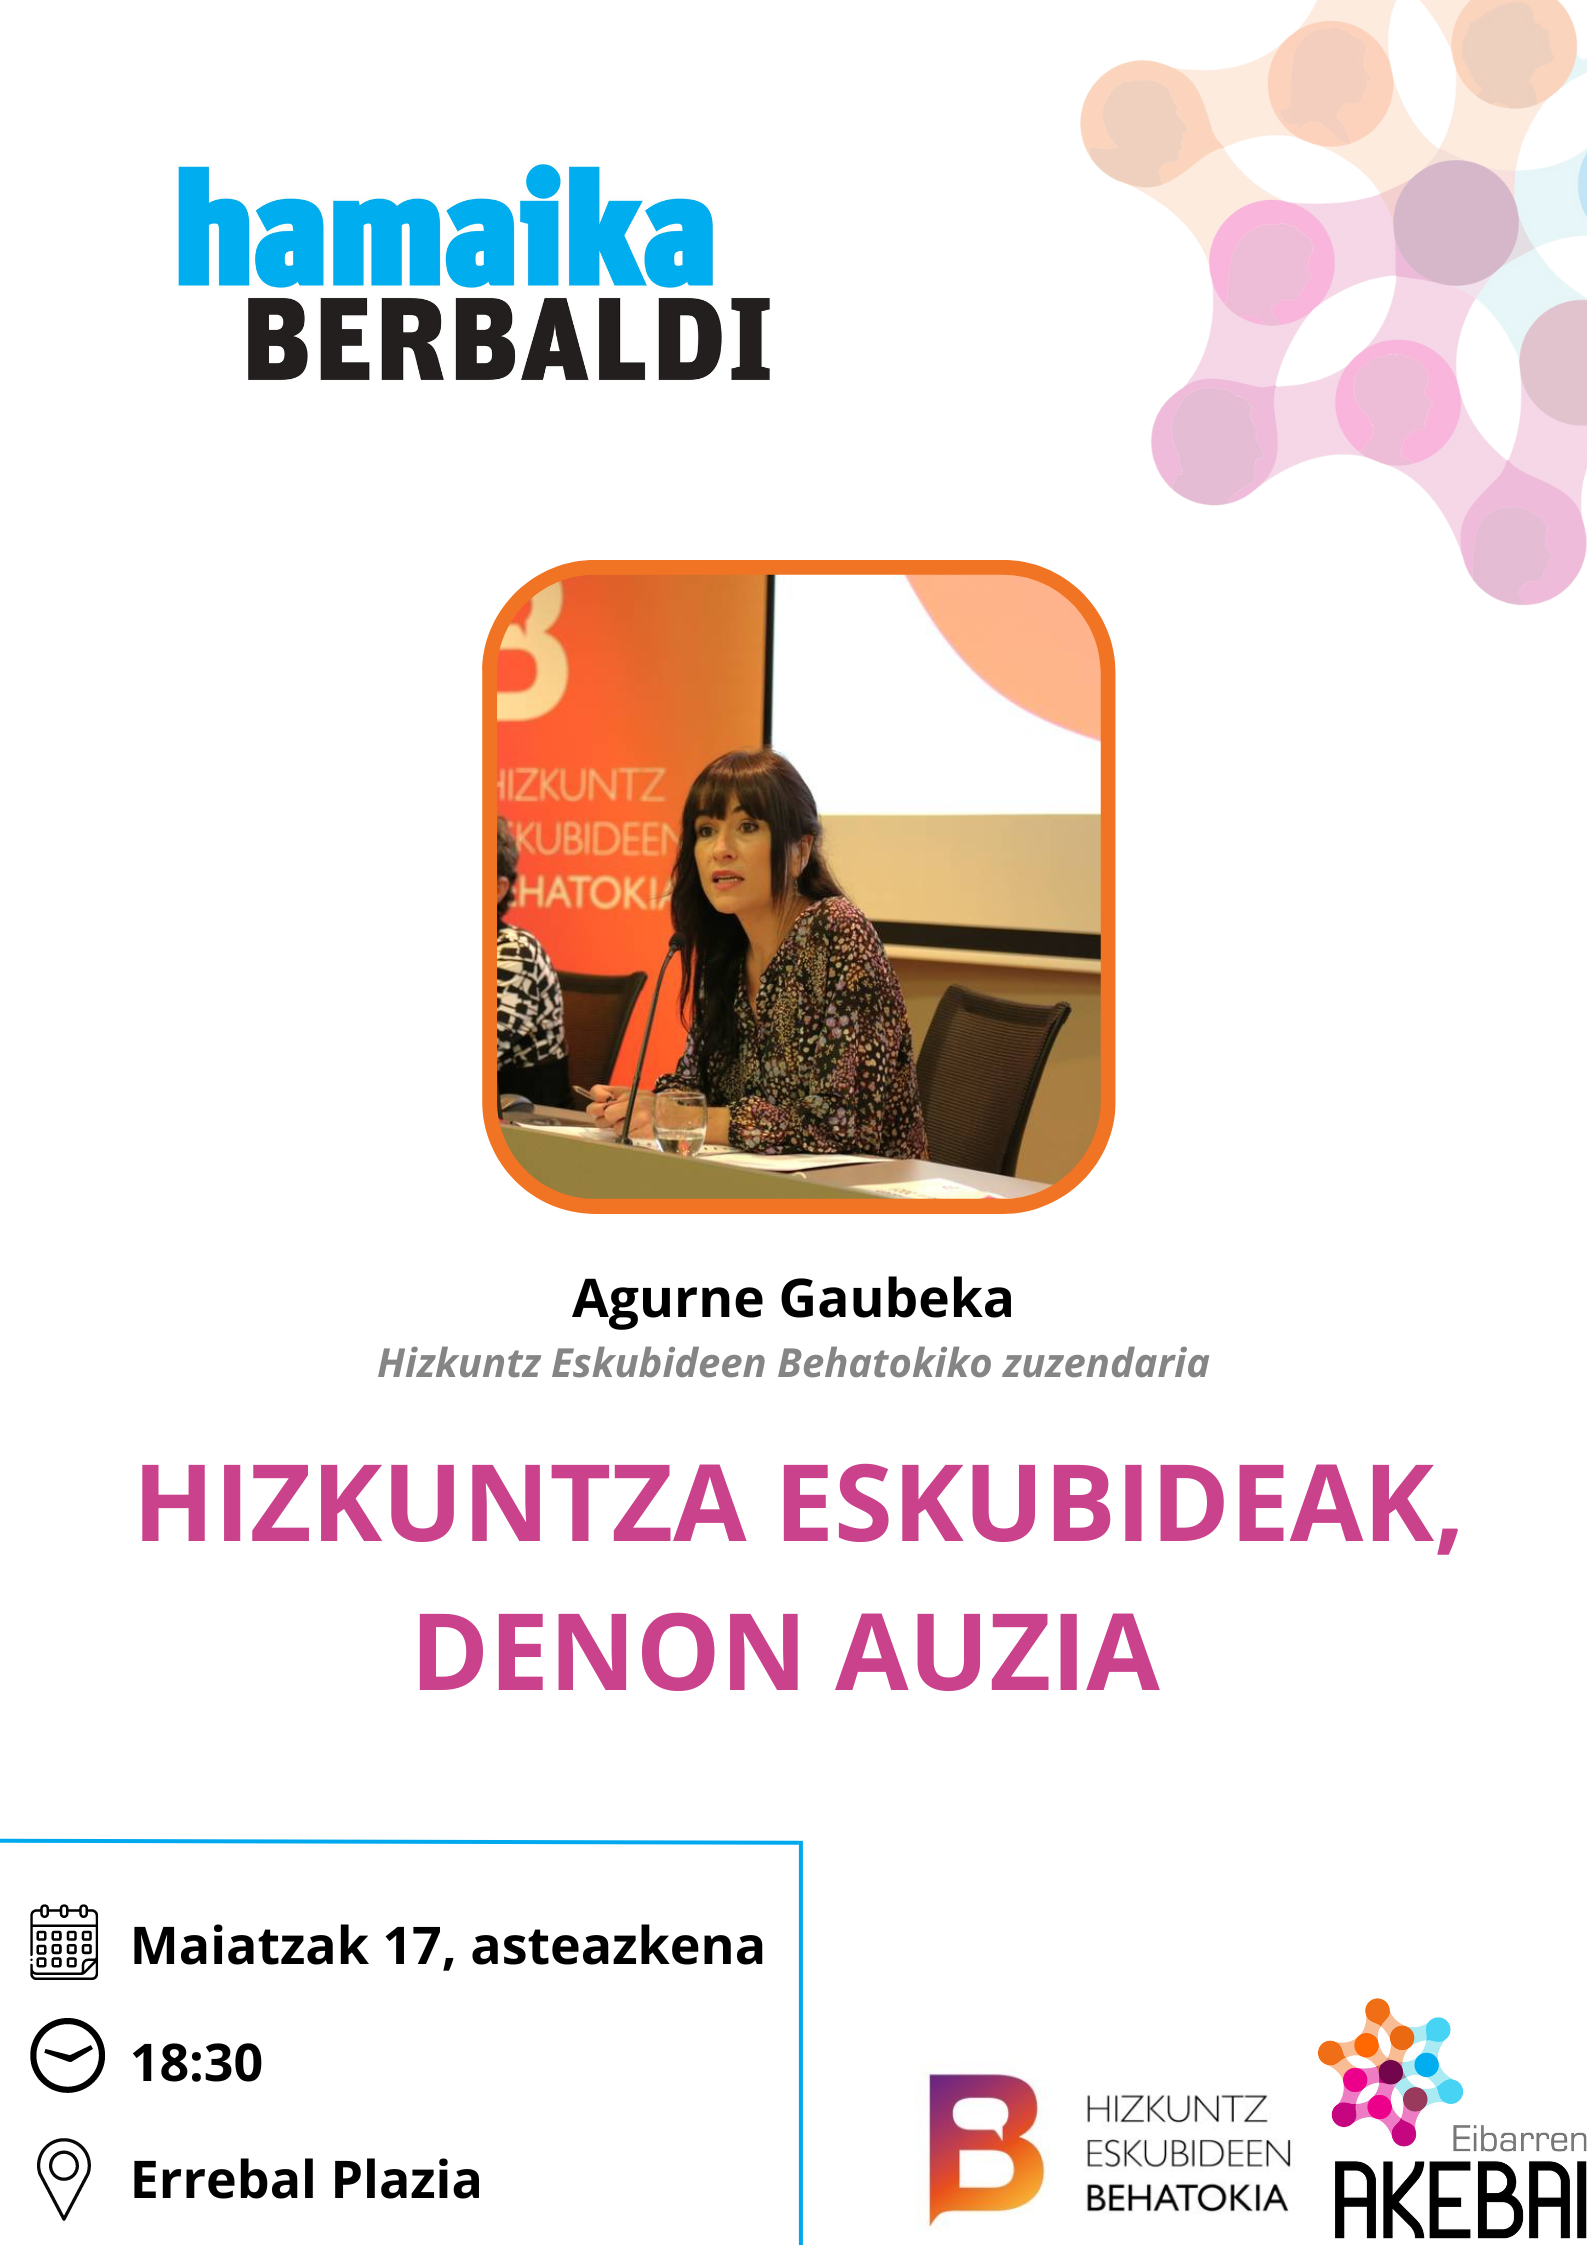 Agurne Gaubeka ofrecerá una charla titulada “Hizkuntza eskubideak, denon auzia” el 17 de mayo, a las 18:30 horas, en la sala de conferencias de Errebal Plazia